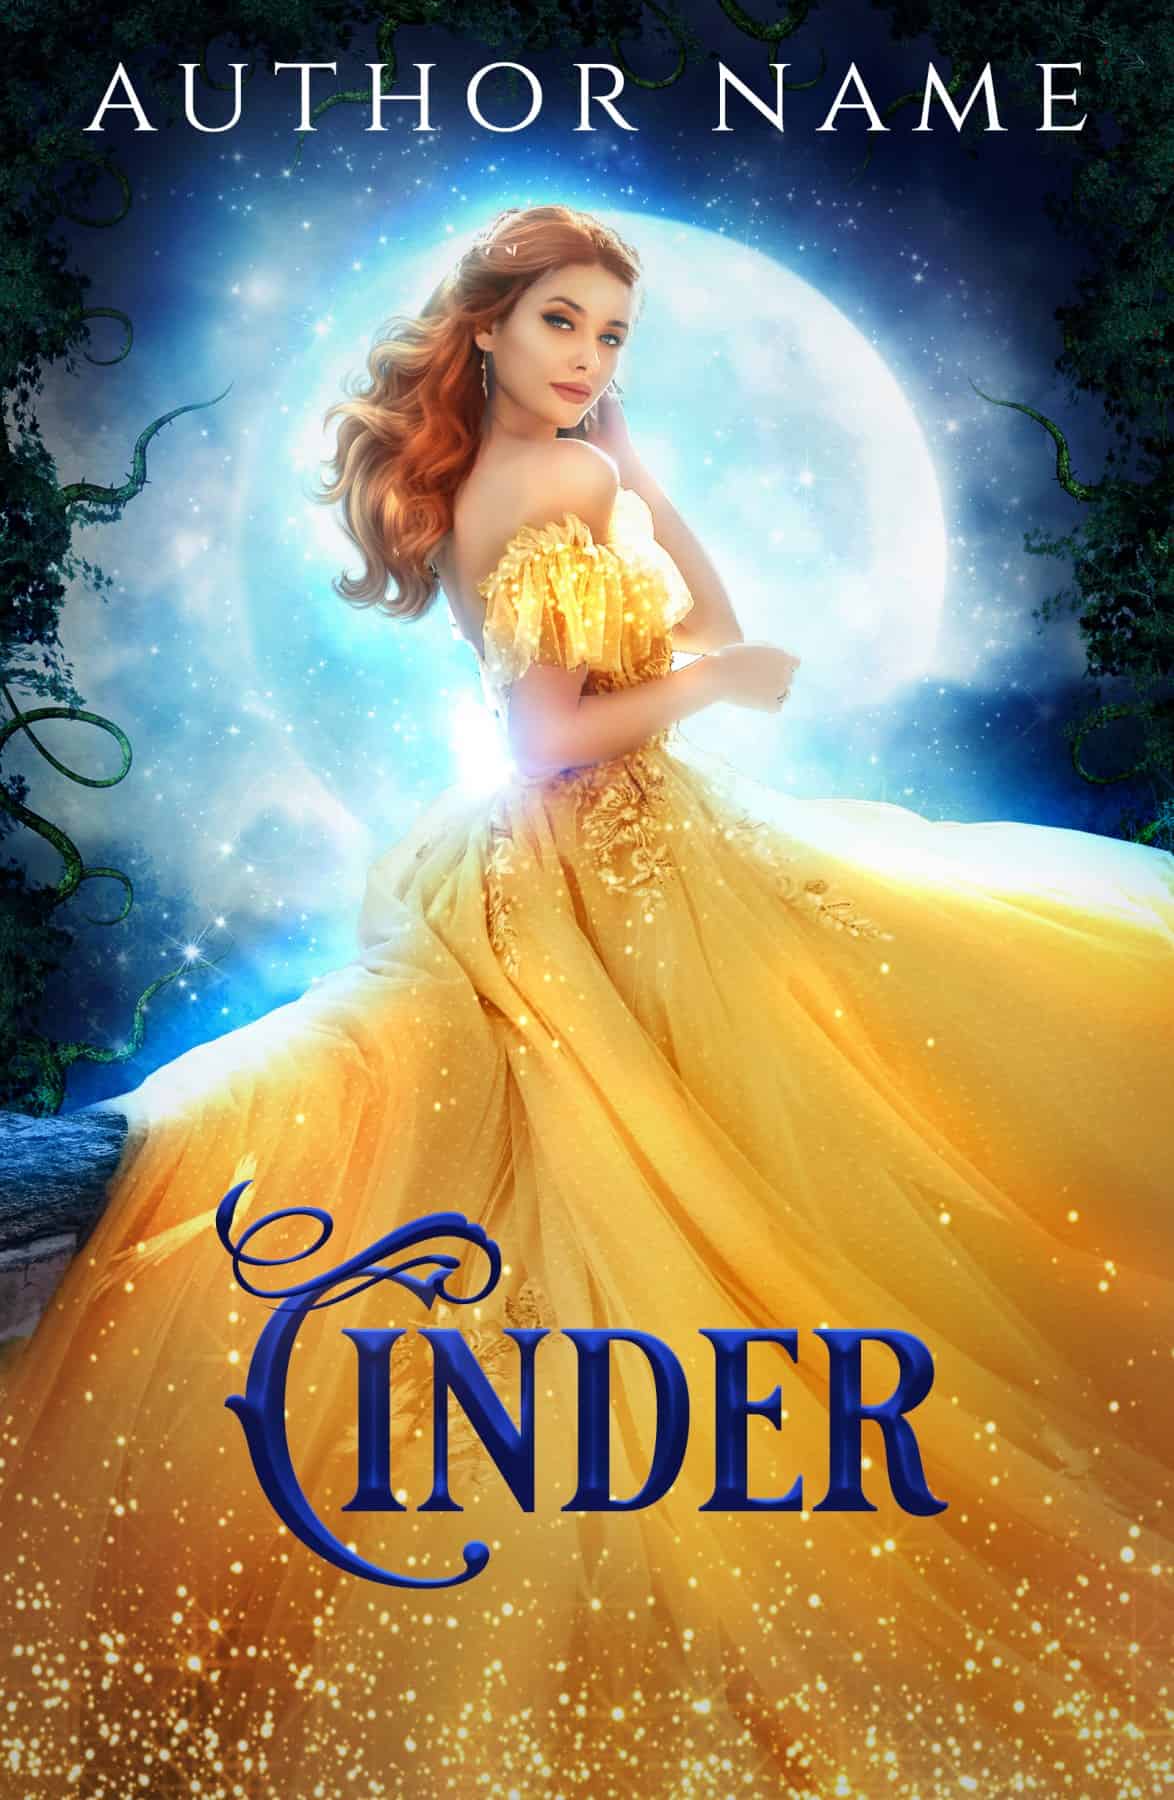 Cinder - The Book Cover Designer